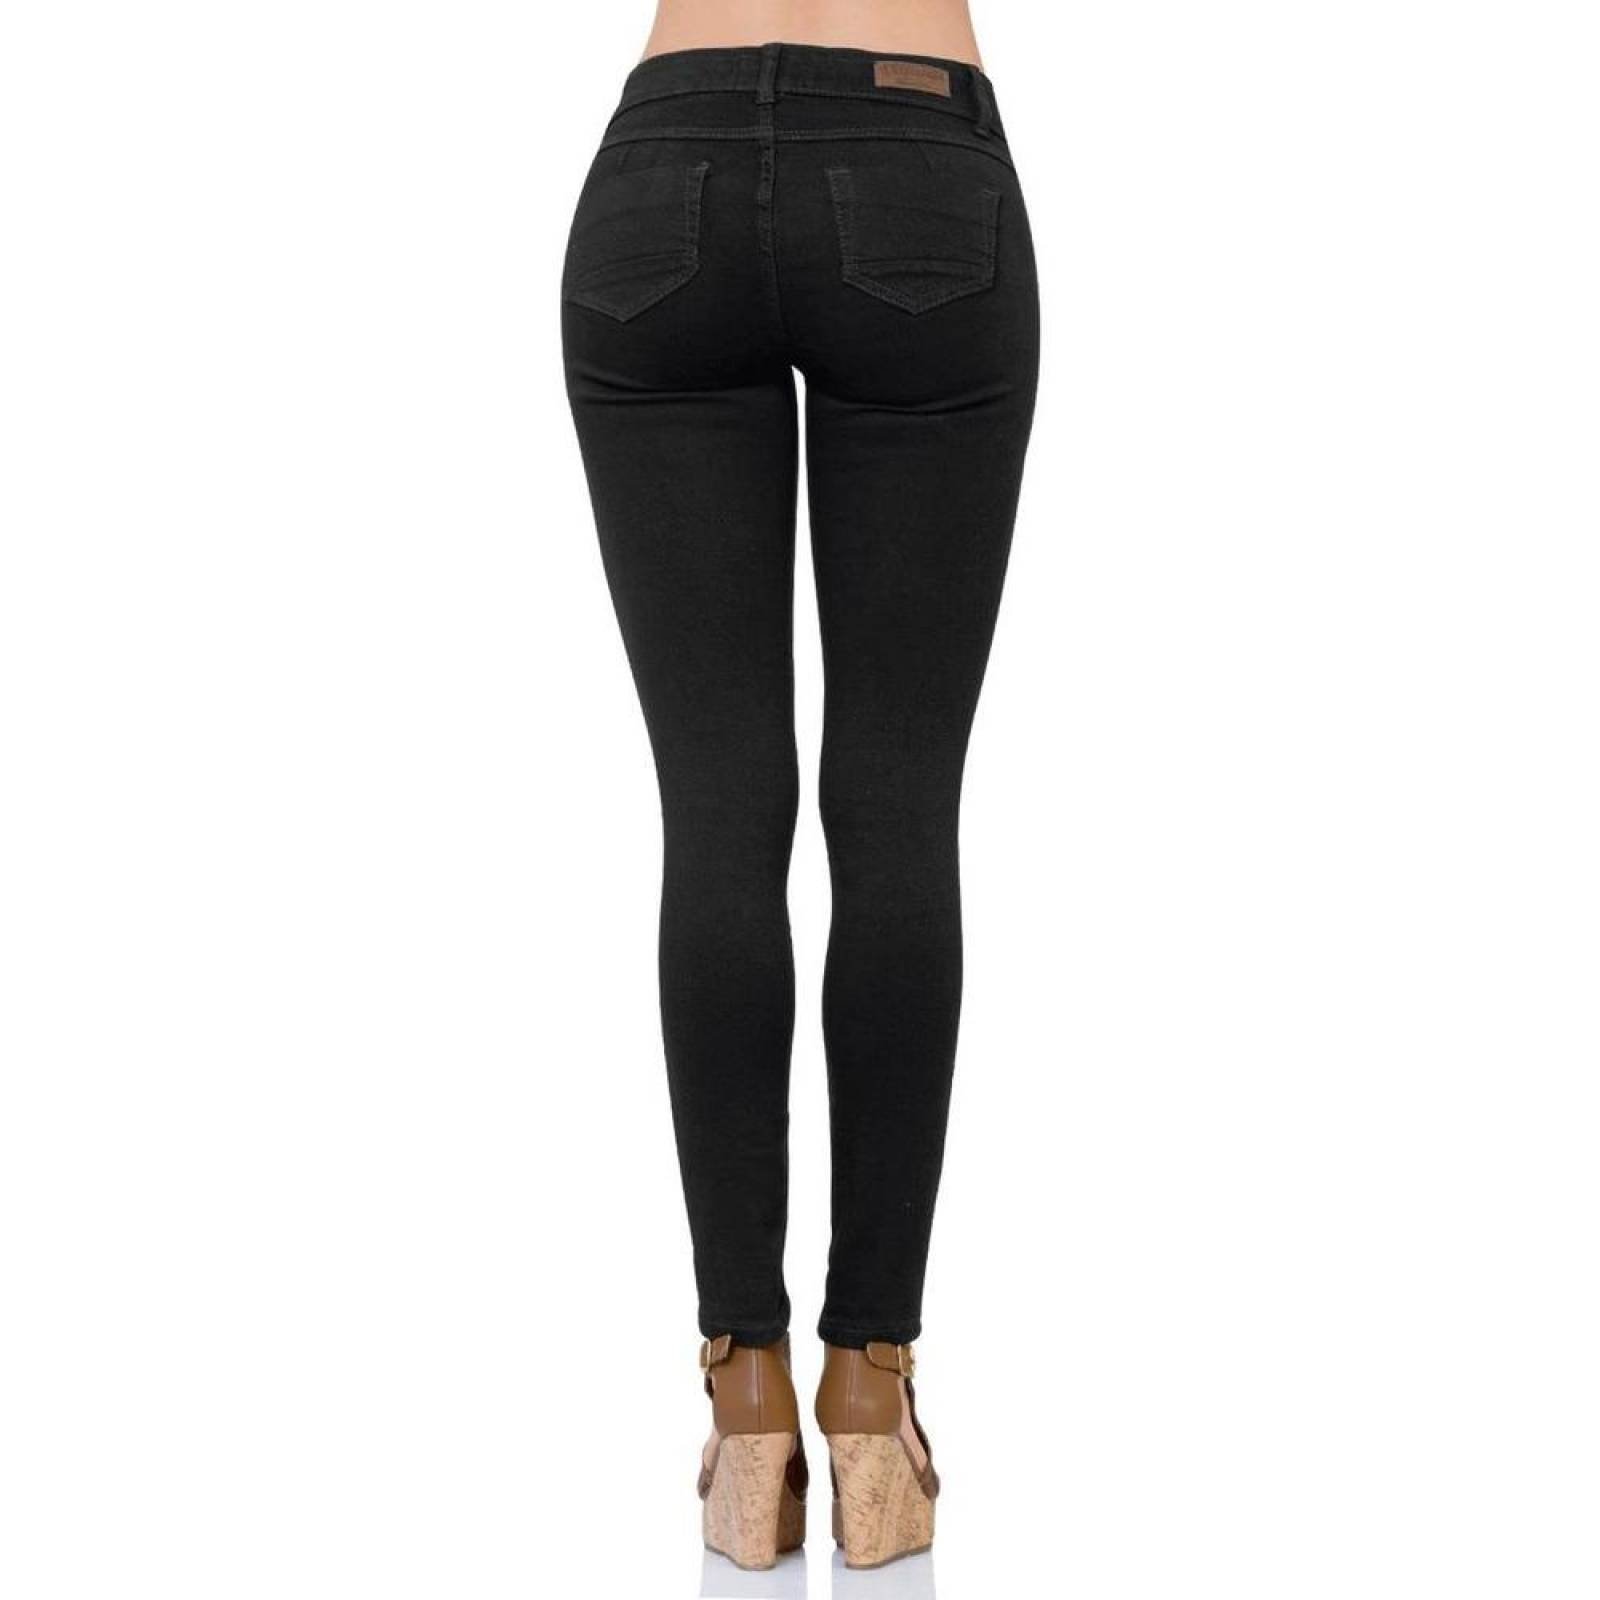 Jeans Básico Mujer Salvaje Tentación Negro 63100152 Mezclilla Stretch 